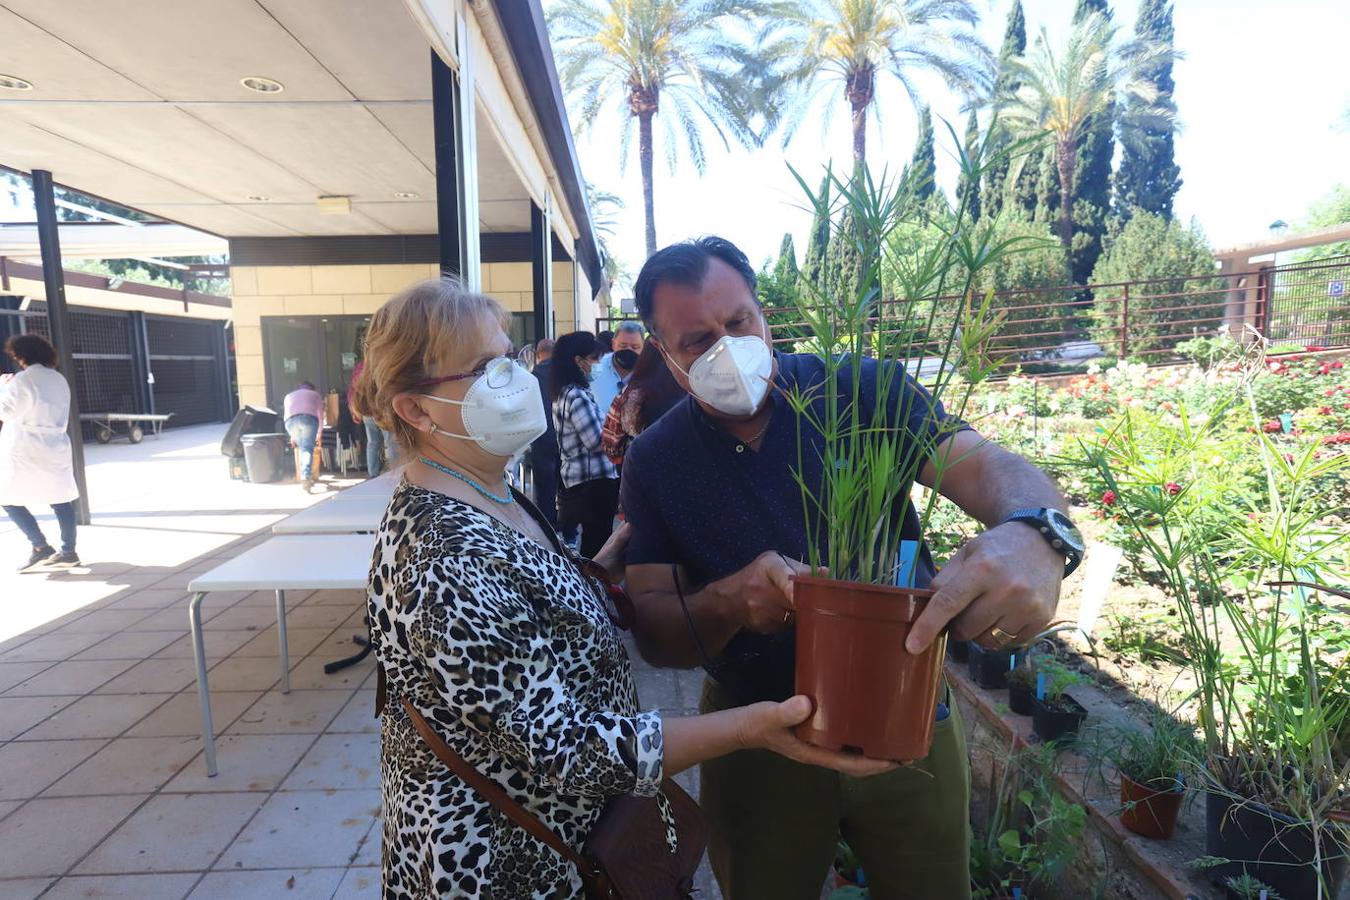 El Mercado del Trueque de plantas del Botánico de Córdoba, en imágenes